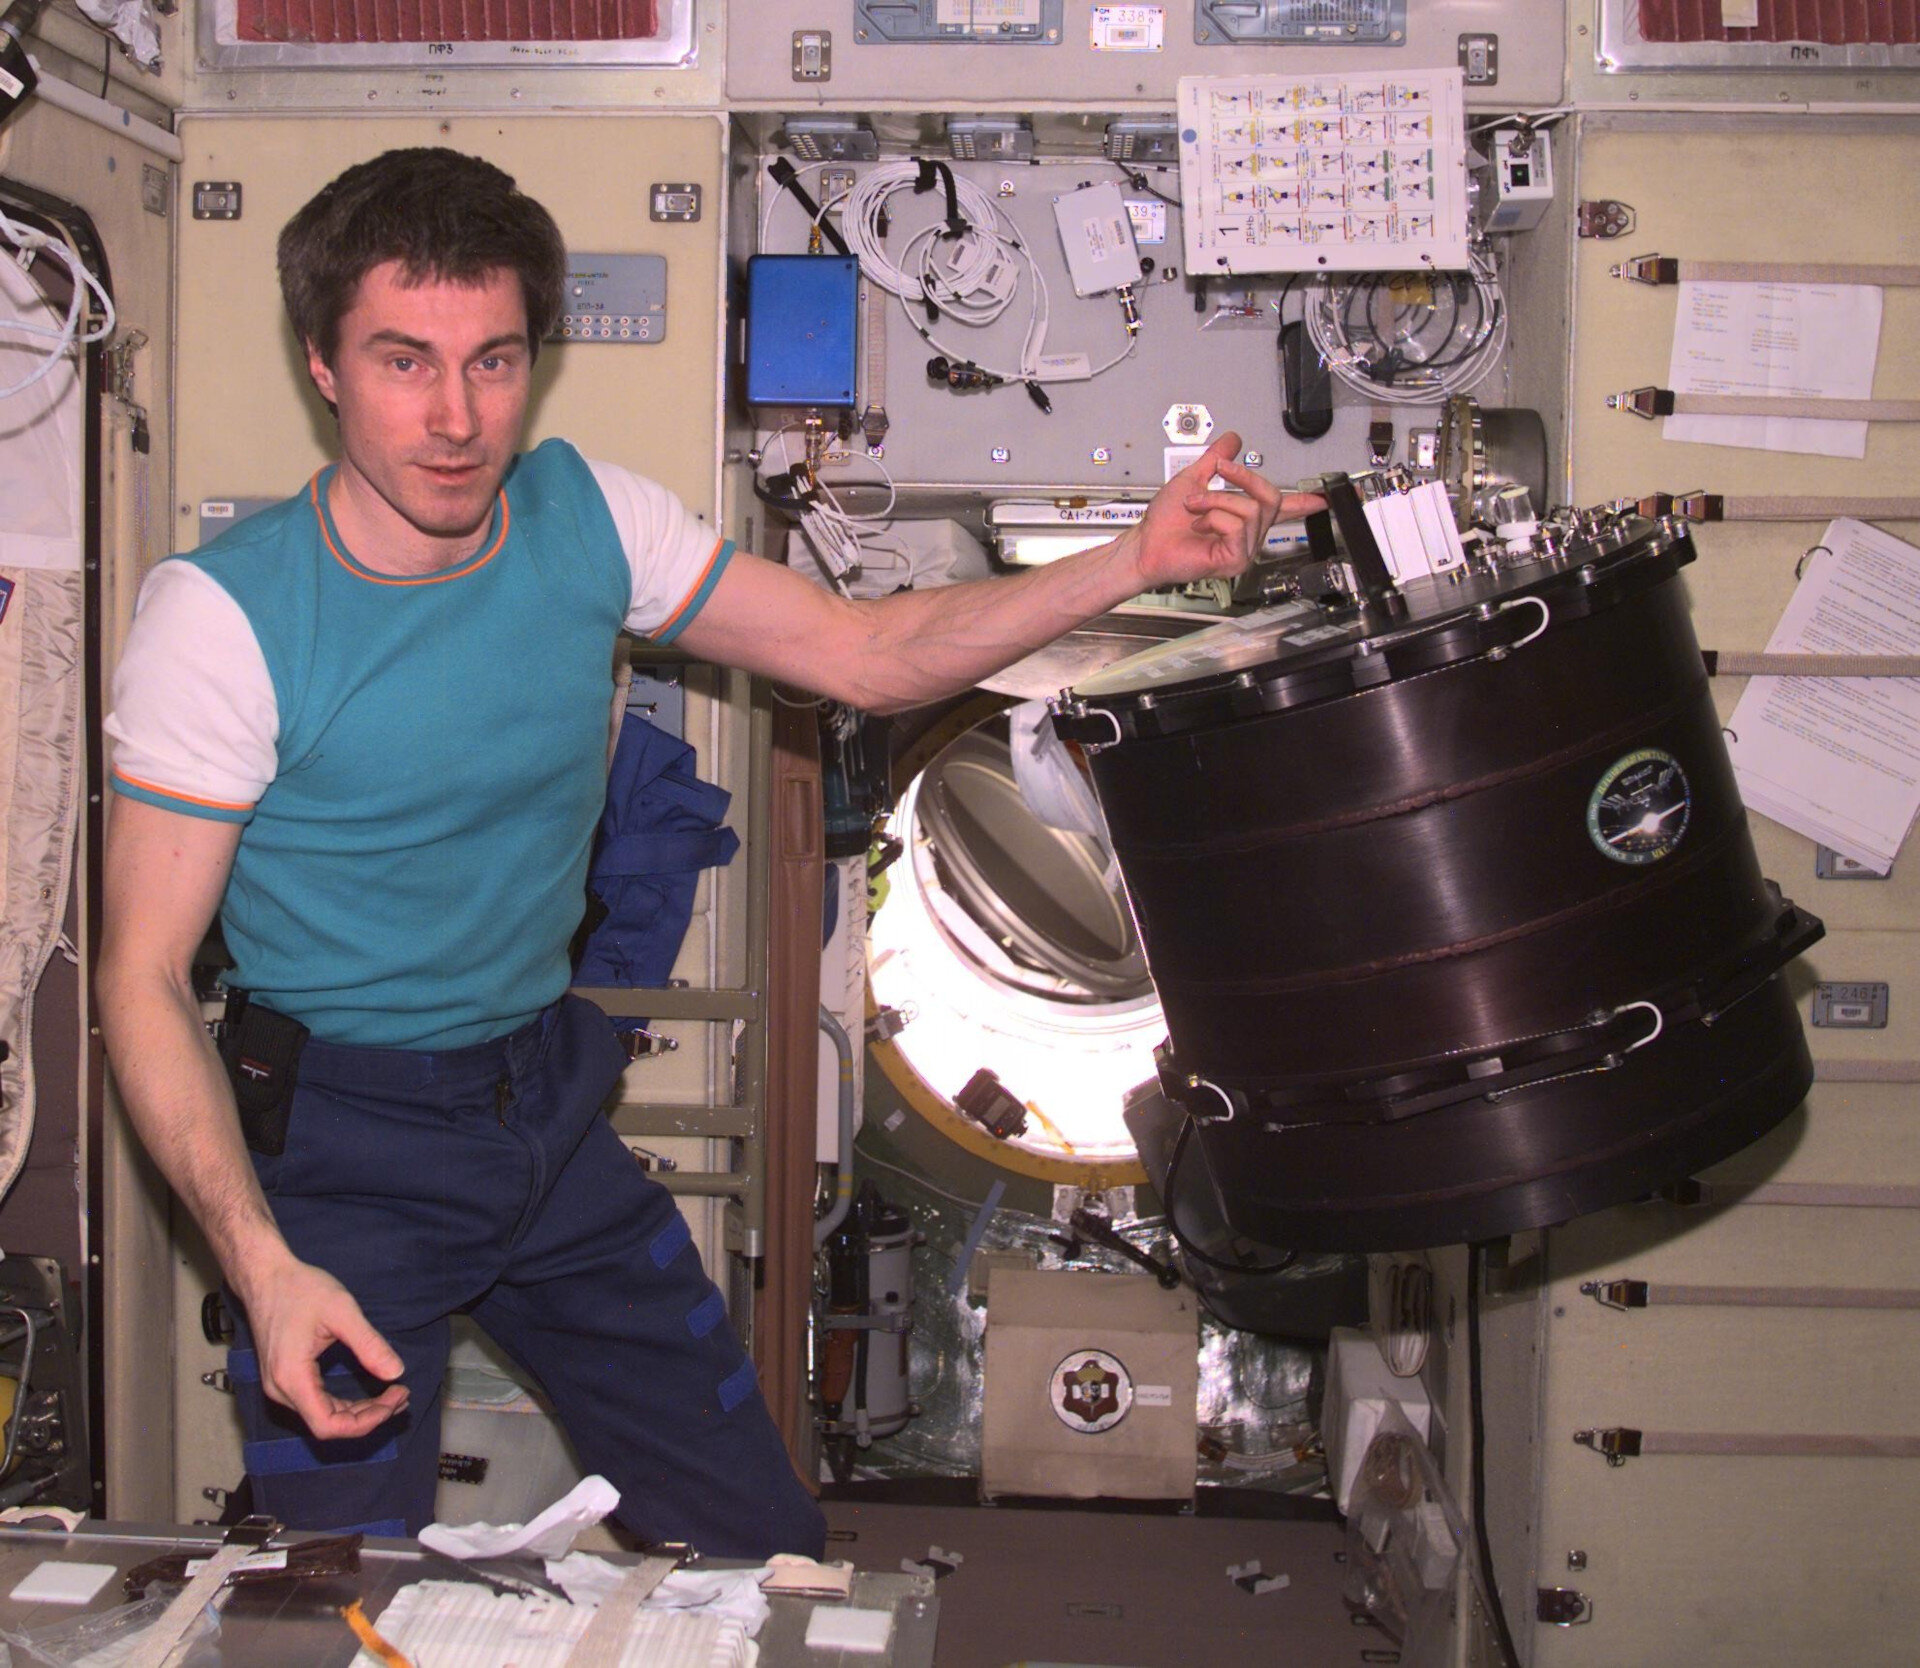 Sergei Krikalev, ISS Expedition 1 Flugingenieur mit dem PKE-Nefedov Experiment auf der ISS